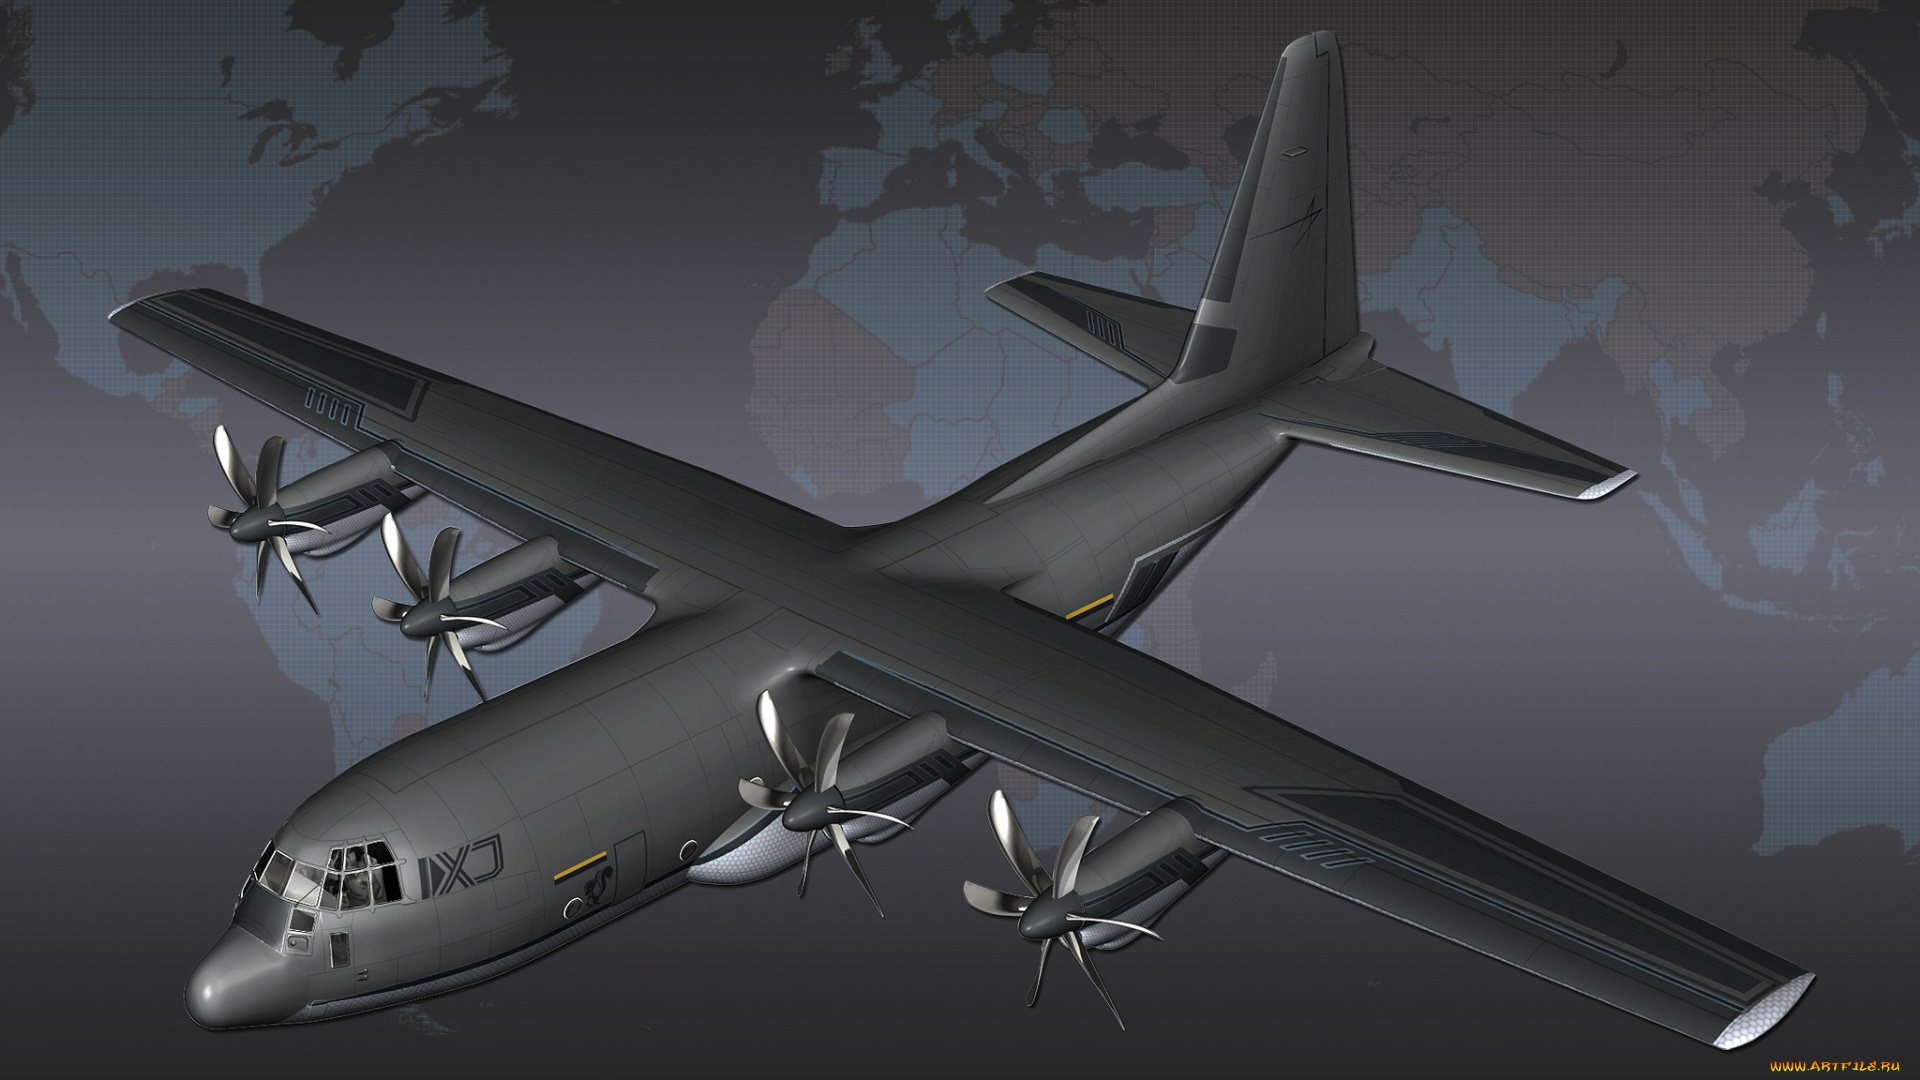 c-130, авиация, 3д, рисованые, v-graphic, самолет, карта